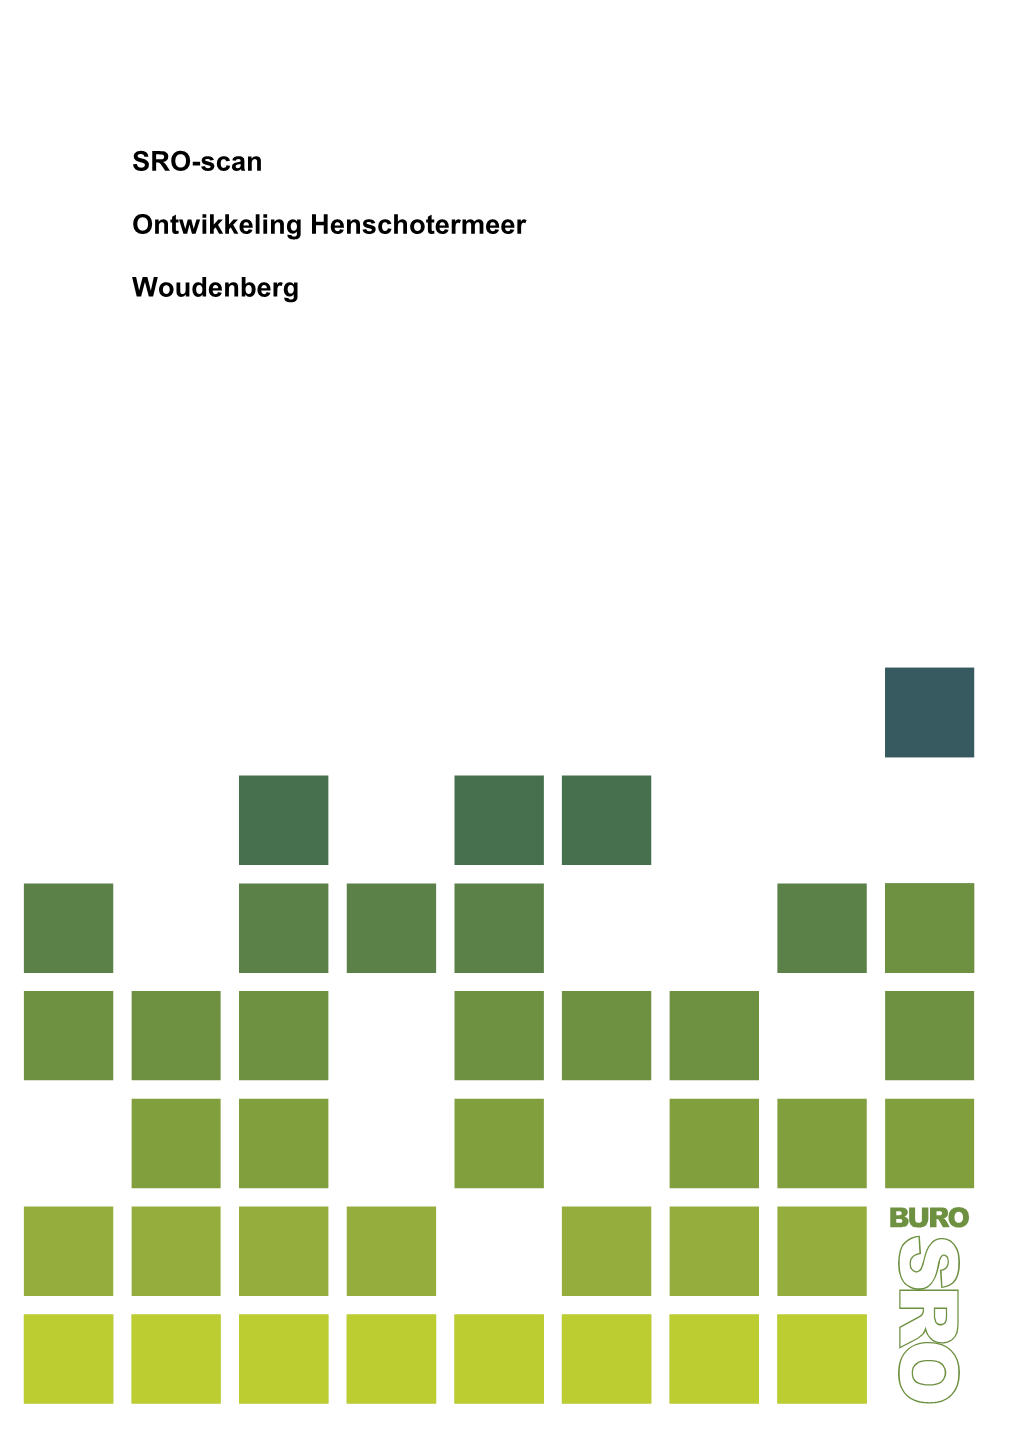 SRO-Scan Ontwikkeling Henschotermeer Woudenberg